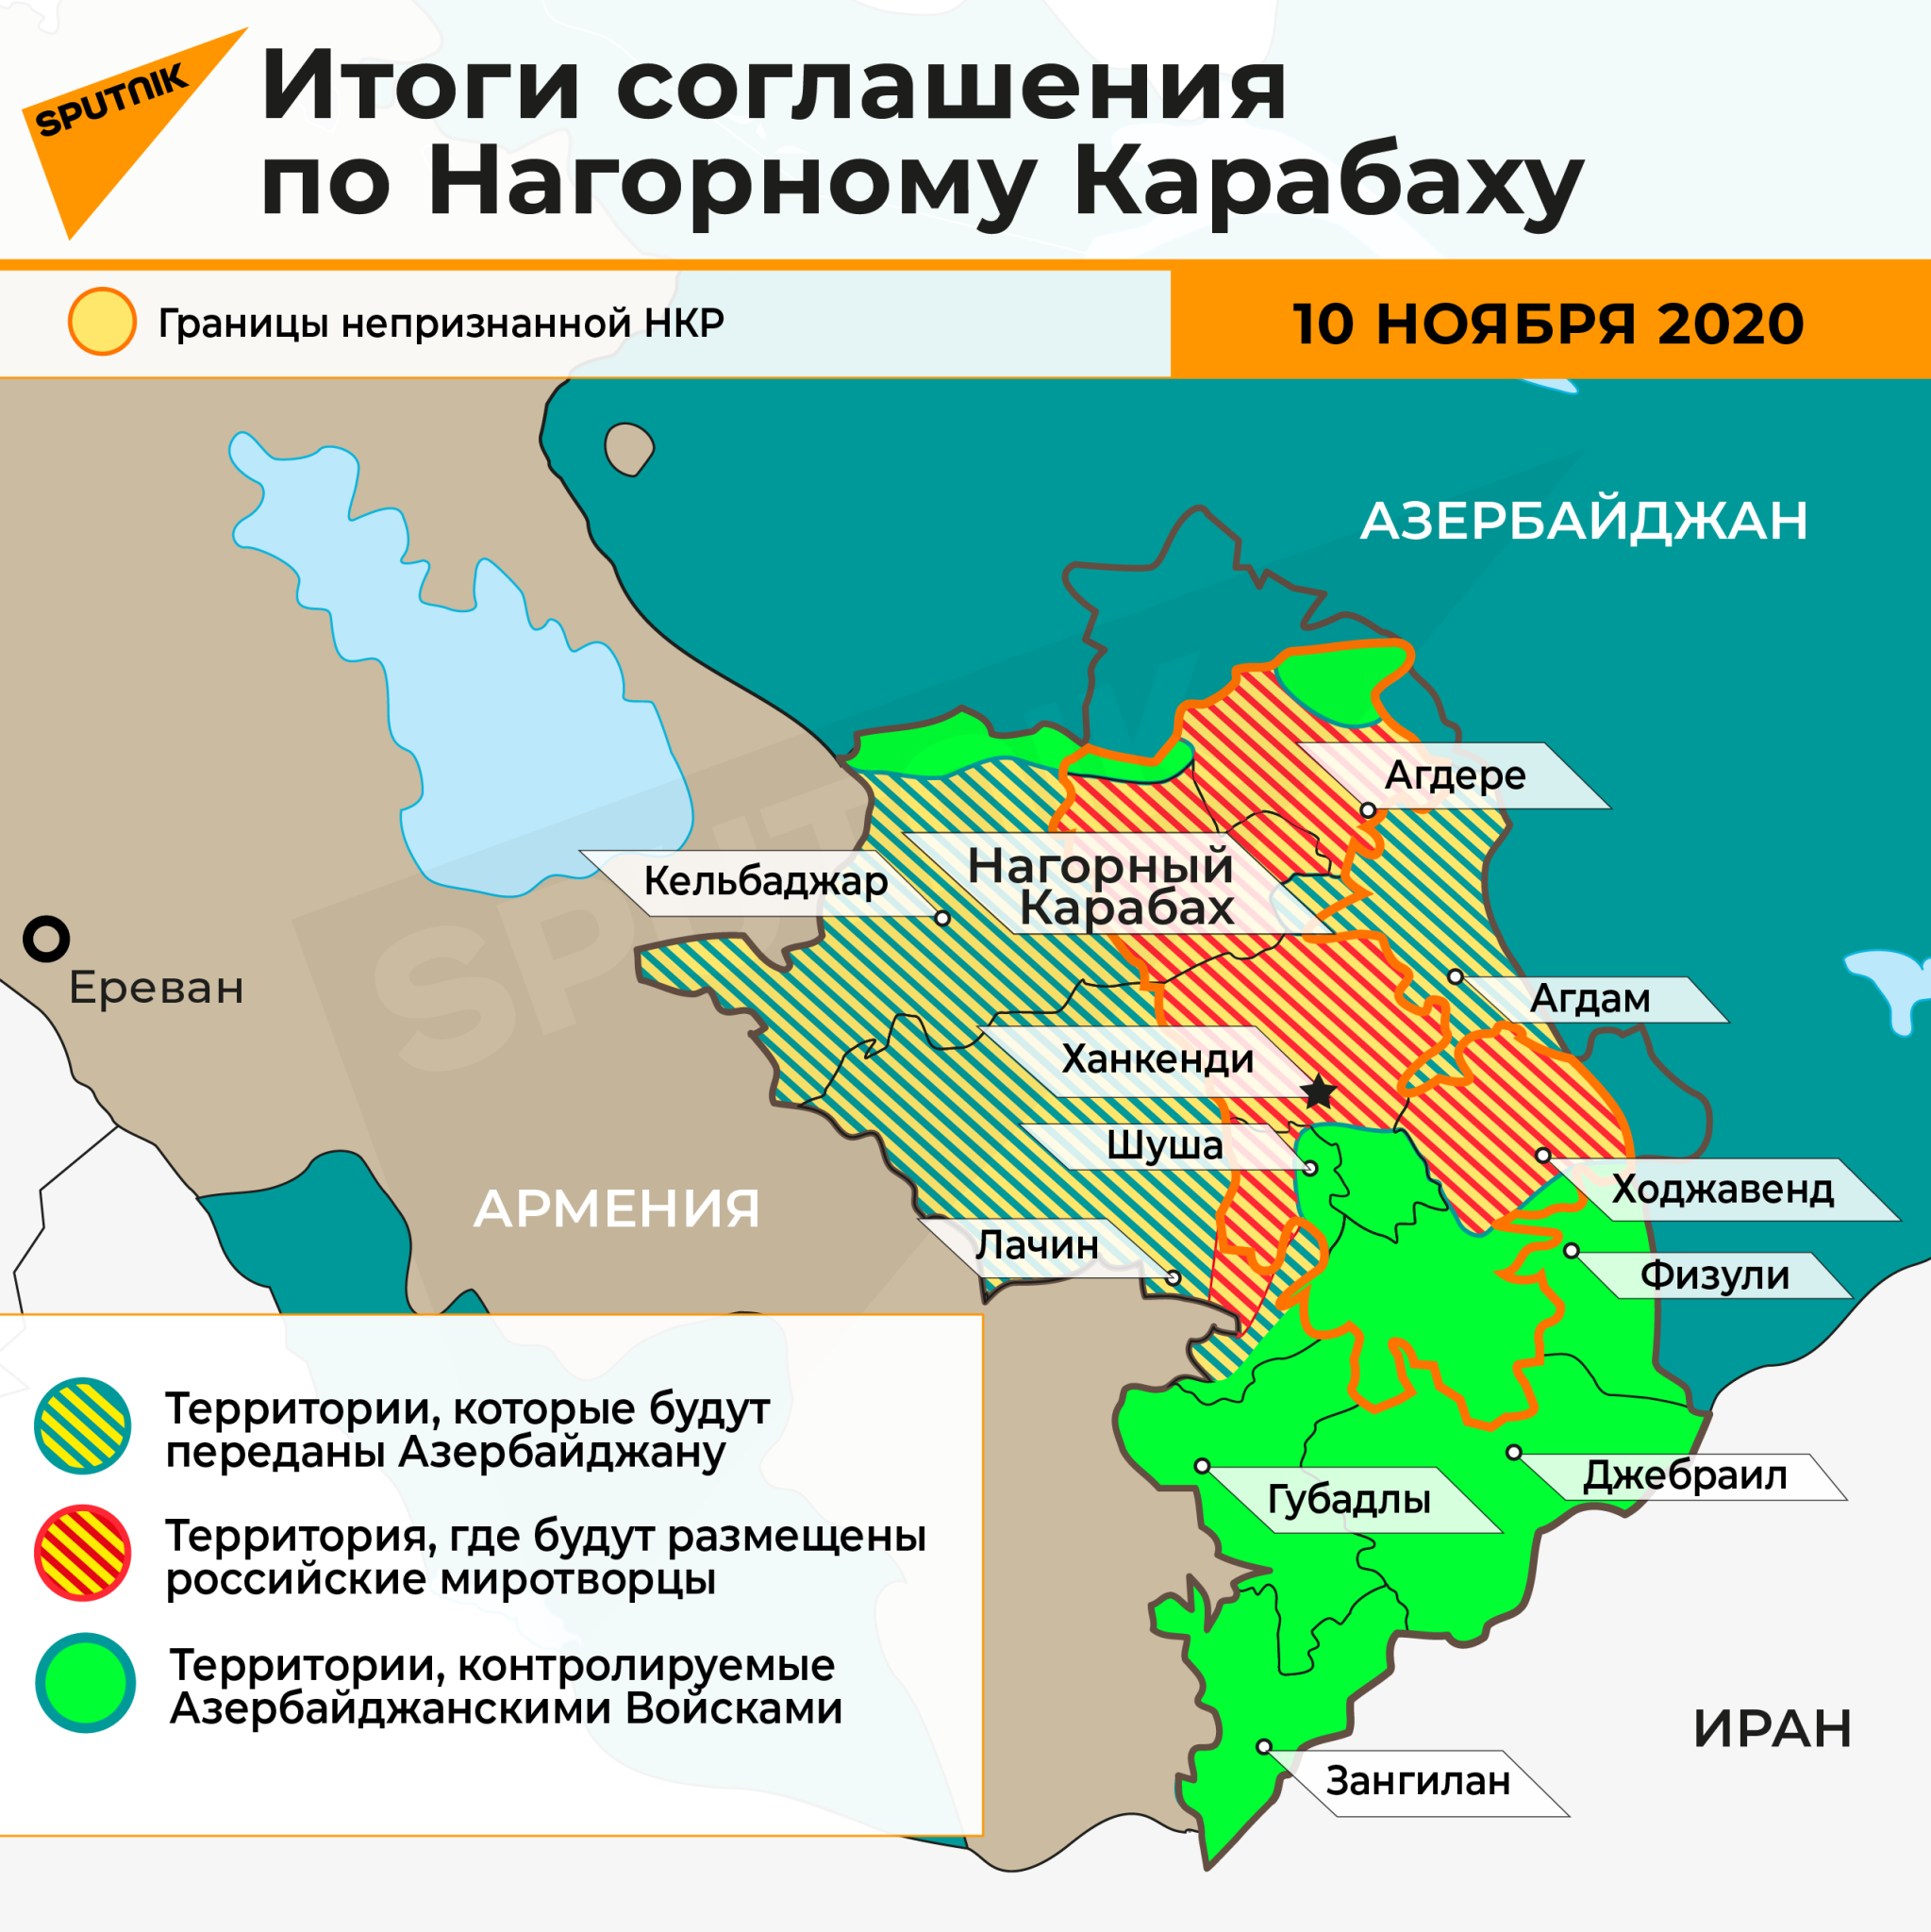 Инфографика: Итоги соглашения по Карабаху - Sputnik Азербайджан